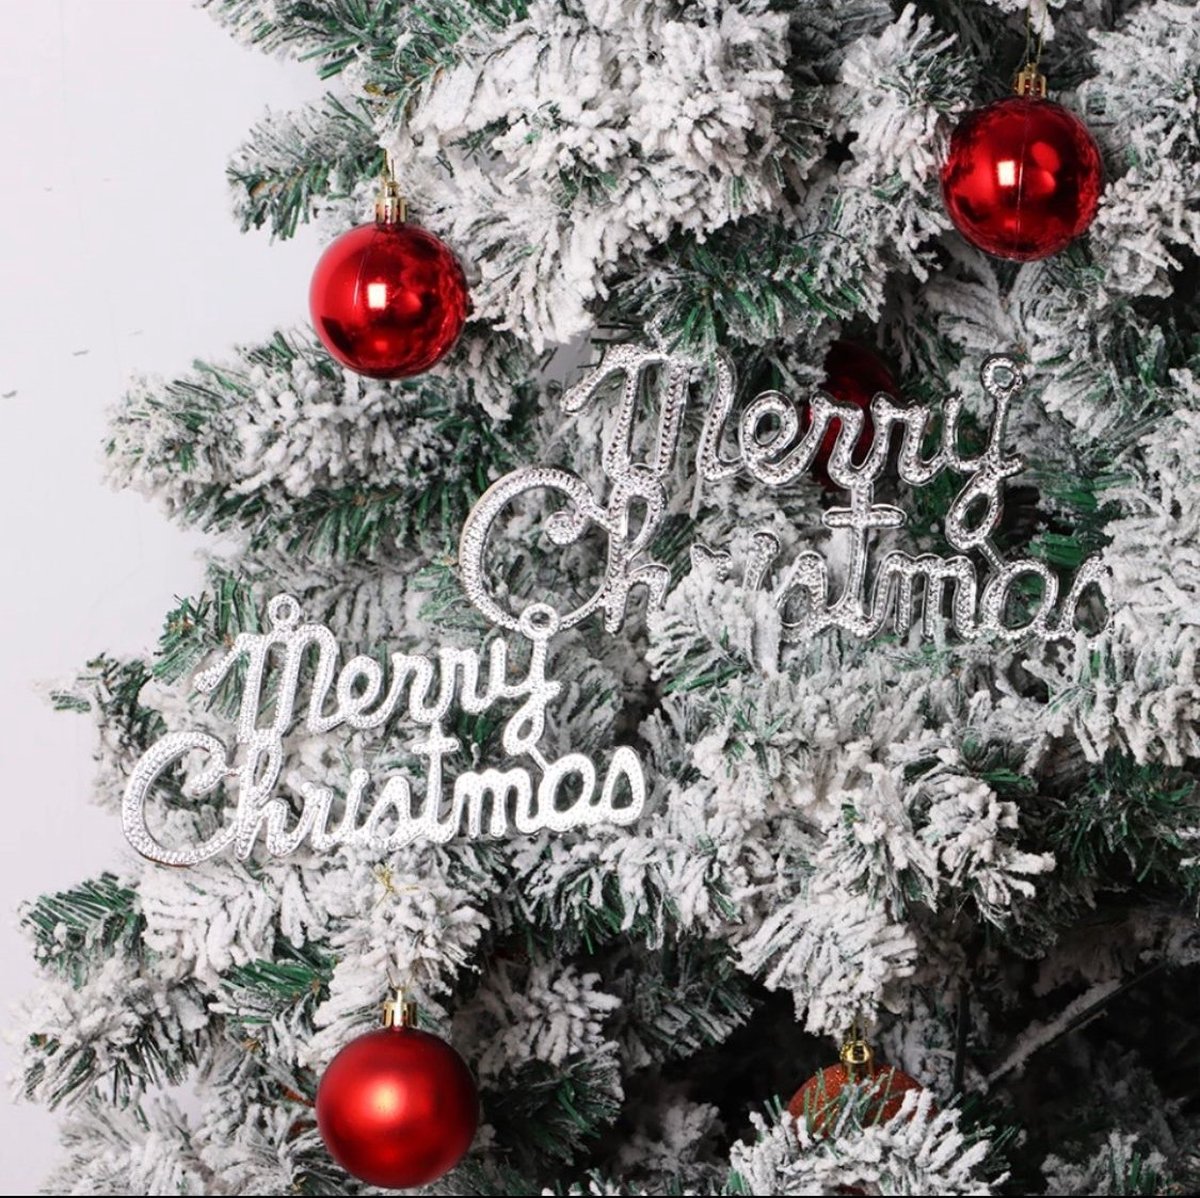 Kersthanger -kerstdecoratie -kerstboom -2 stuks -decoratie voor de kerstboom -merry christmas zilver hanger -merry christmas kerstboomhanger zilver-zilver kerstboom hanger merry christmas-kerstboomhanger kerst-Kerstboom Decoratie-Kerstsfeer-Christmas